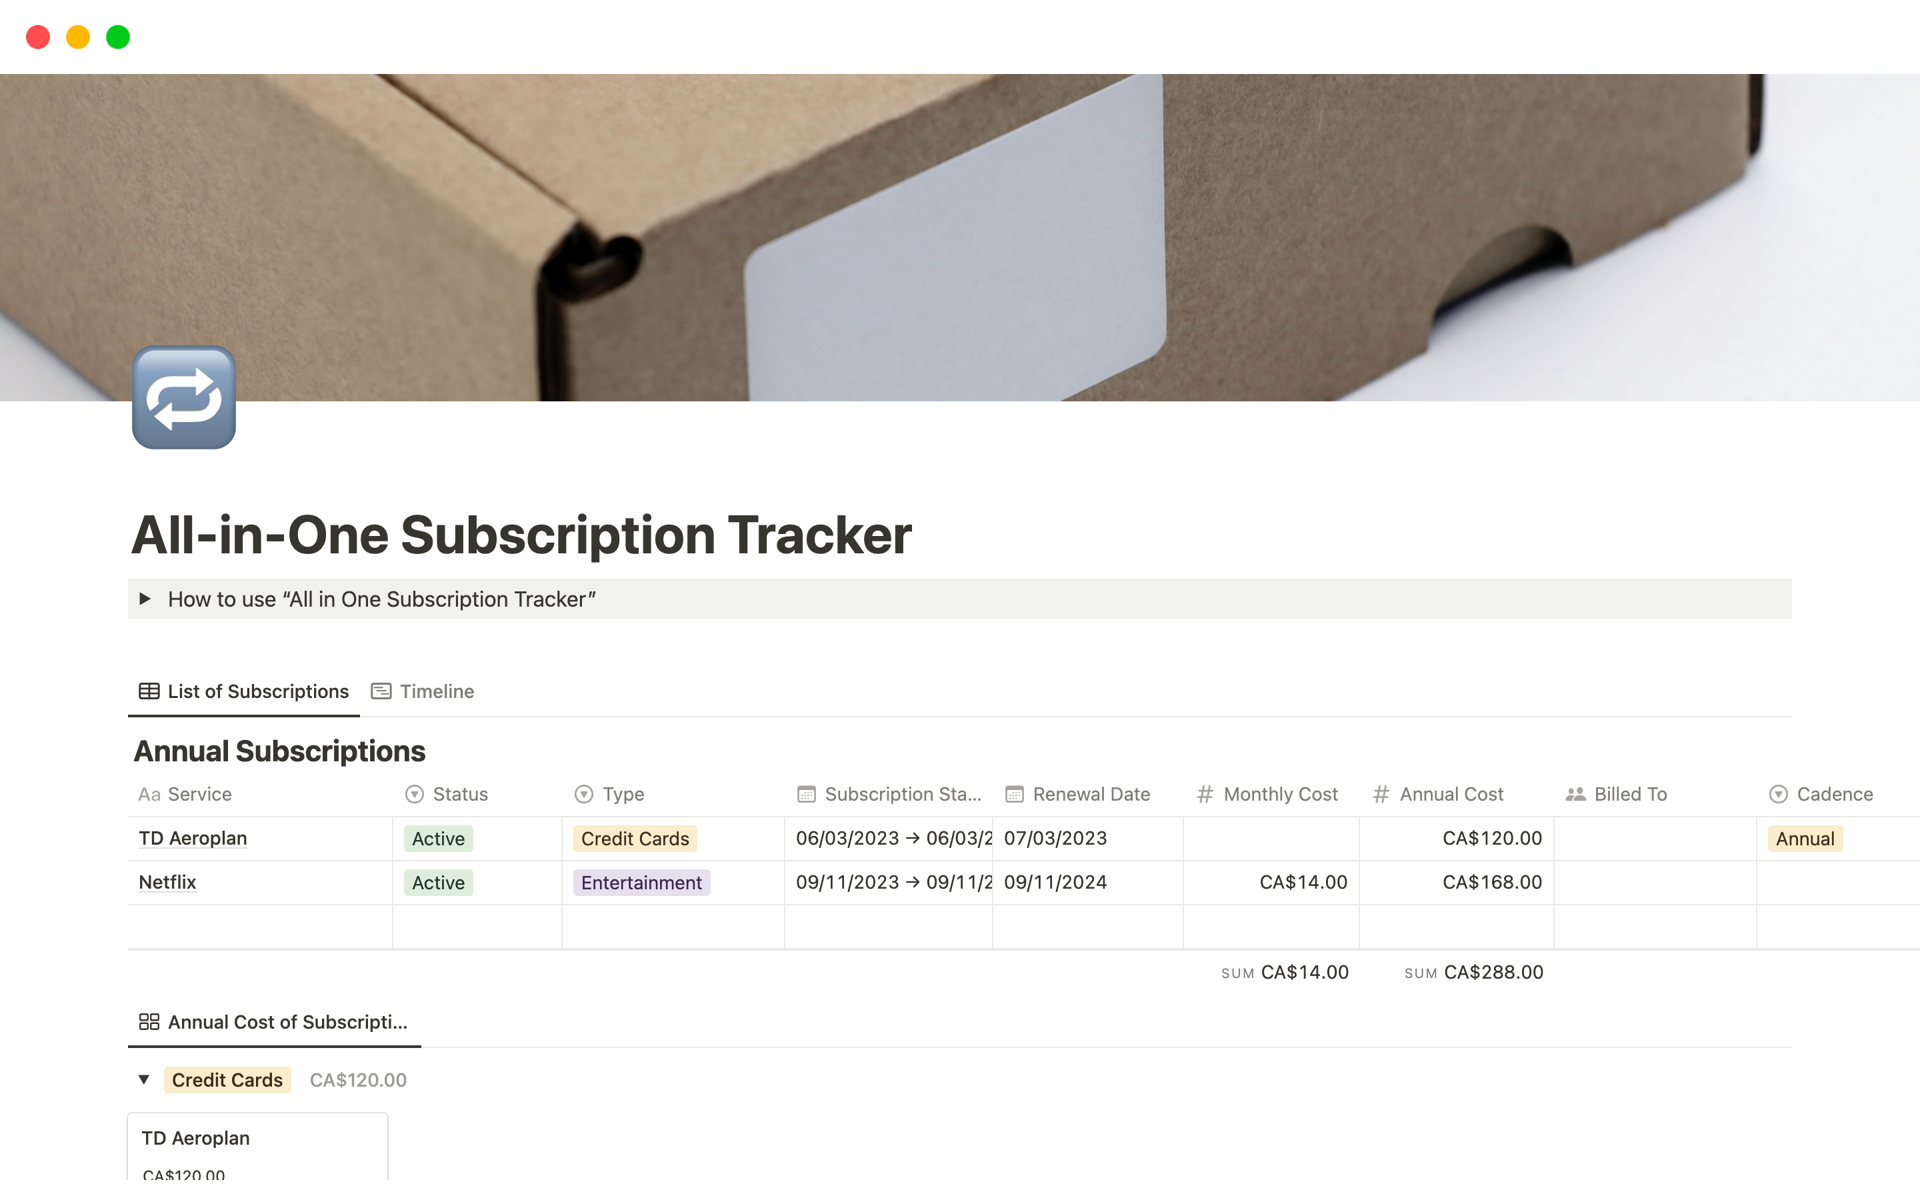 Vista previa de una plantilla para All-in-One Subscription Tracker